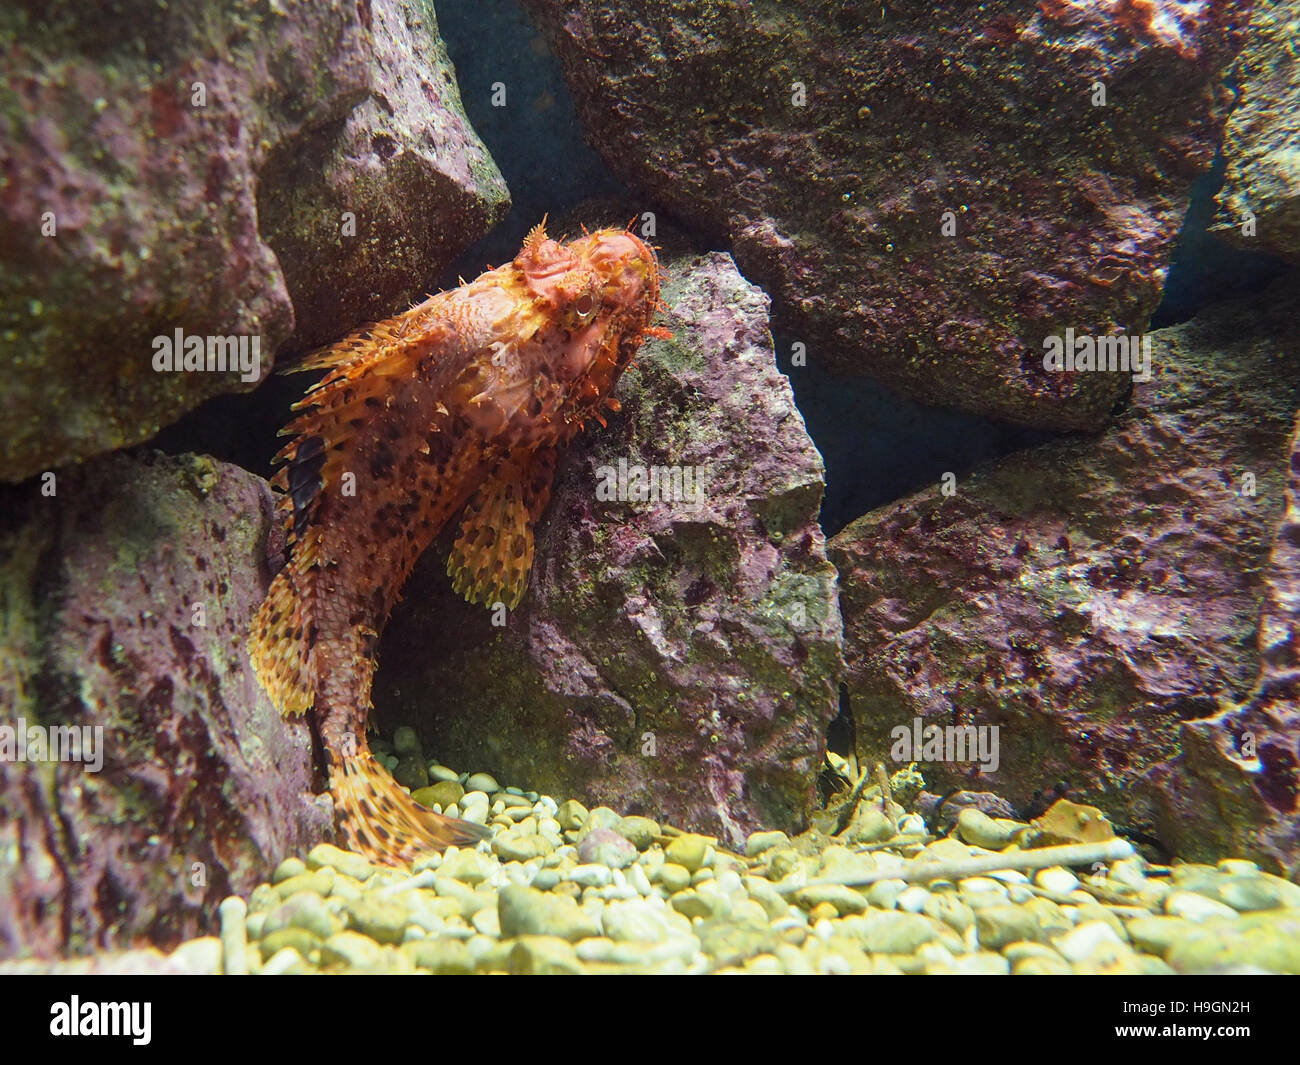 Exotic fish in an Aquarium Stock Photo